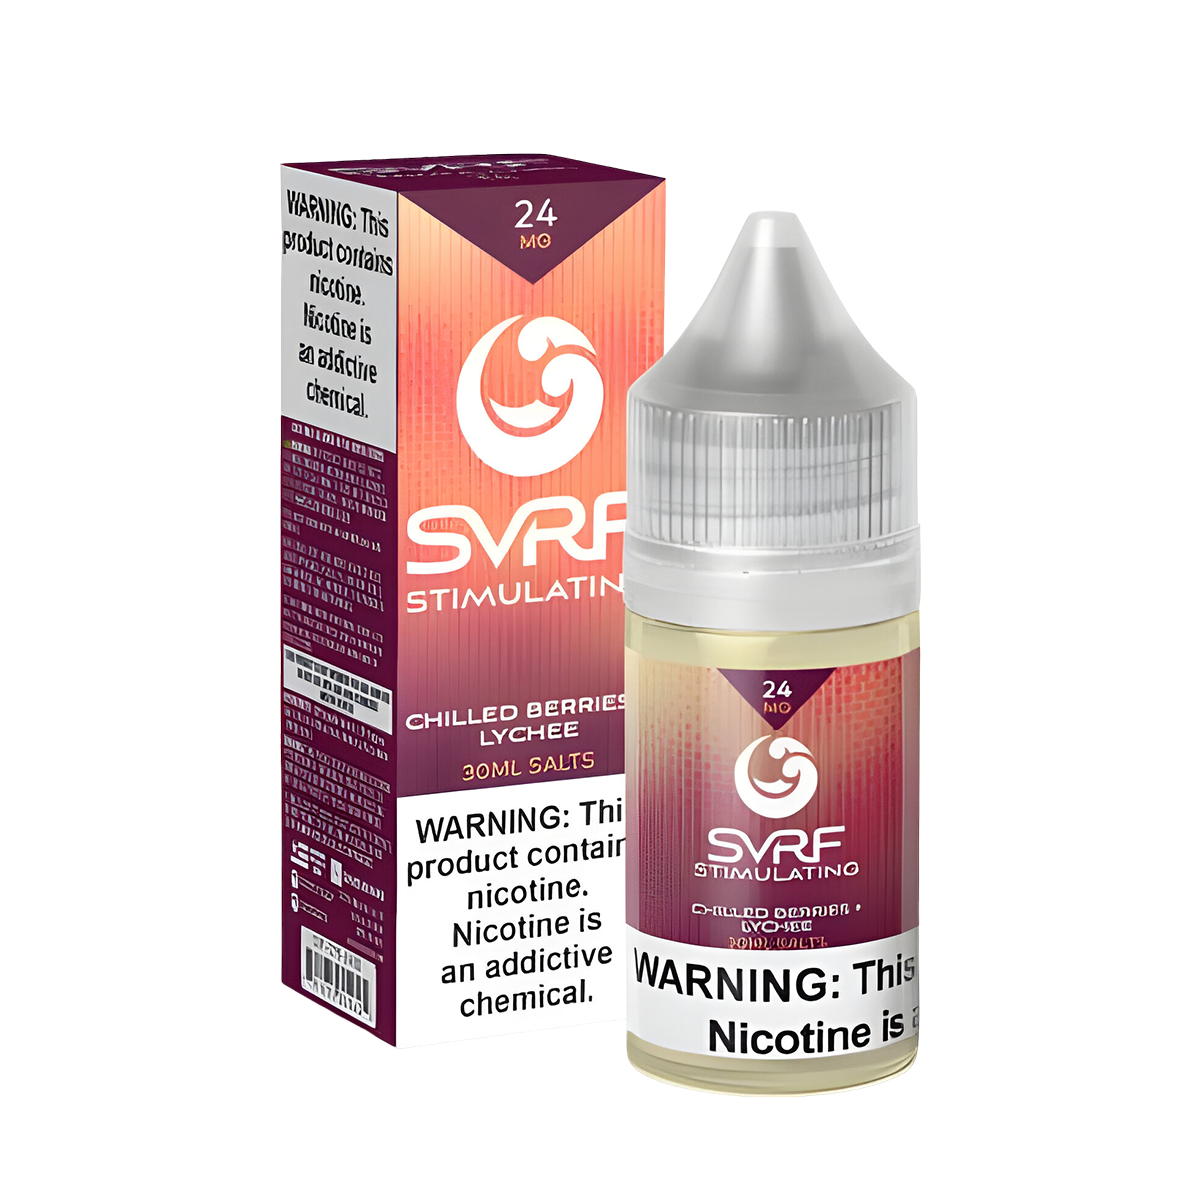 SVRF Salt Nicotine Vape Juice 24 Mg 30 Ml Stimulating